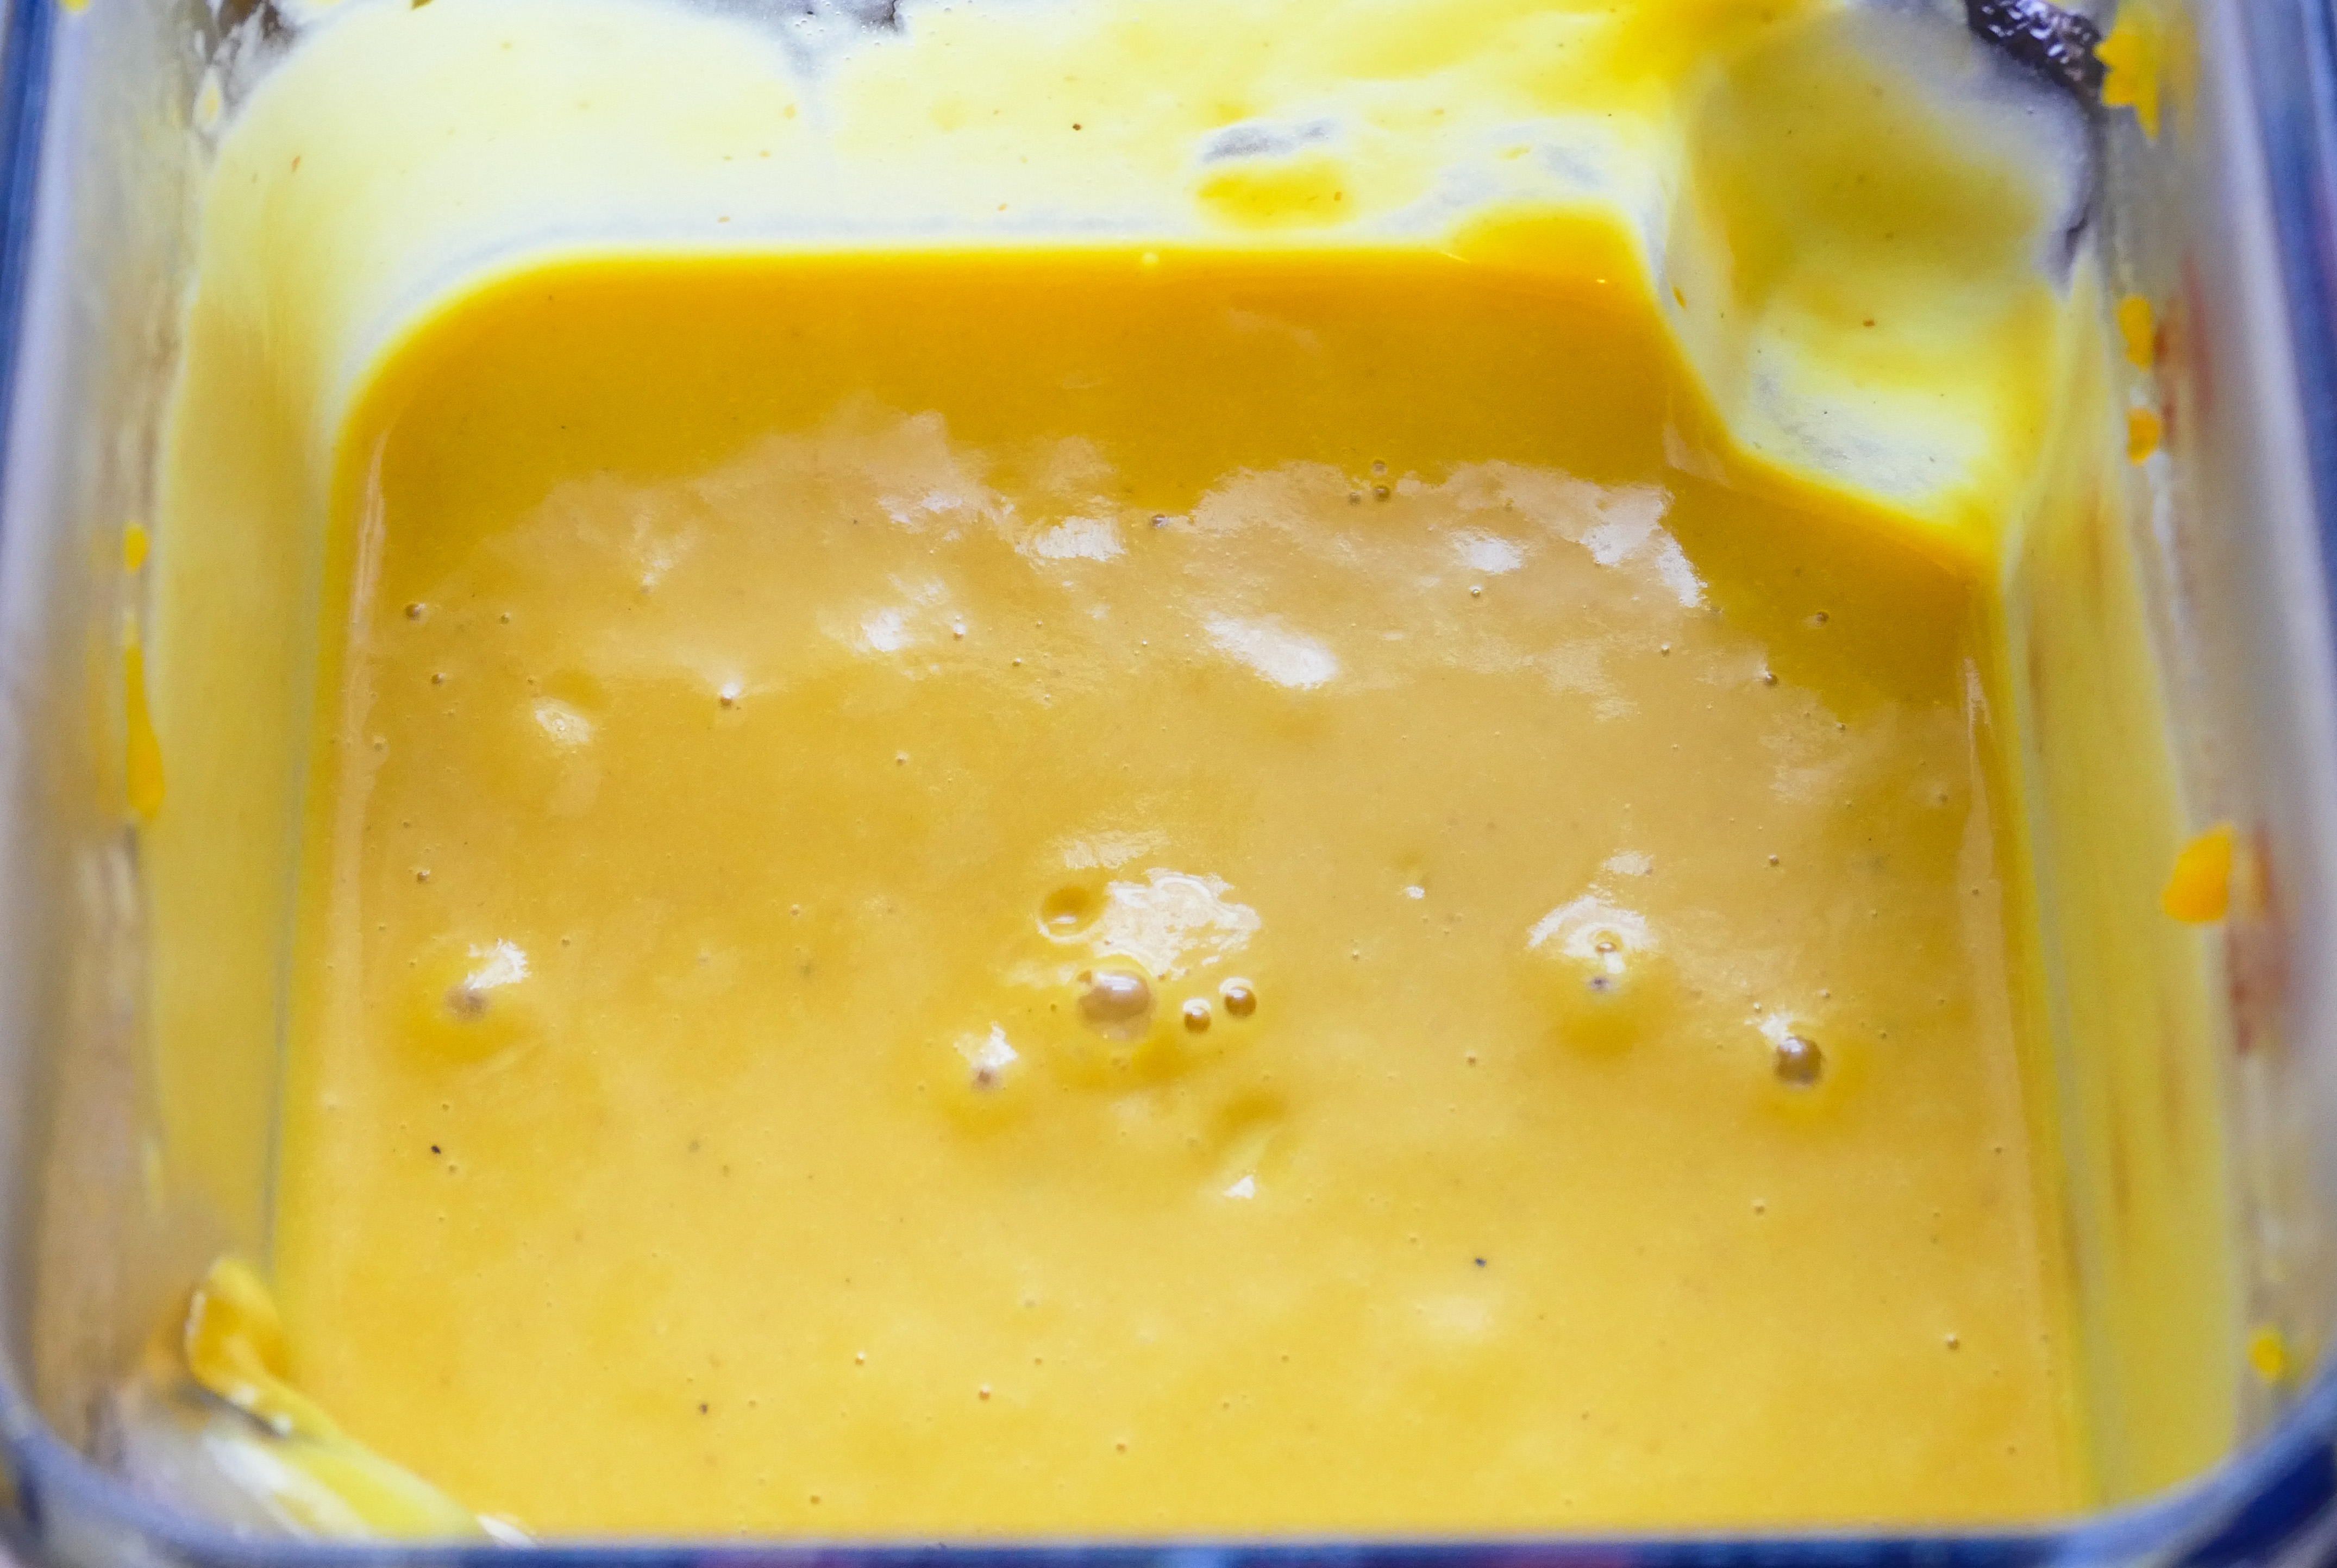 Крем-суп из тыквы со сливками